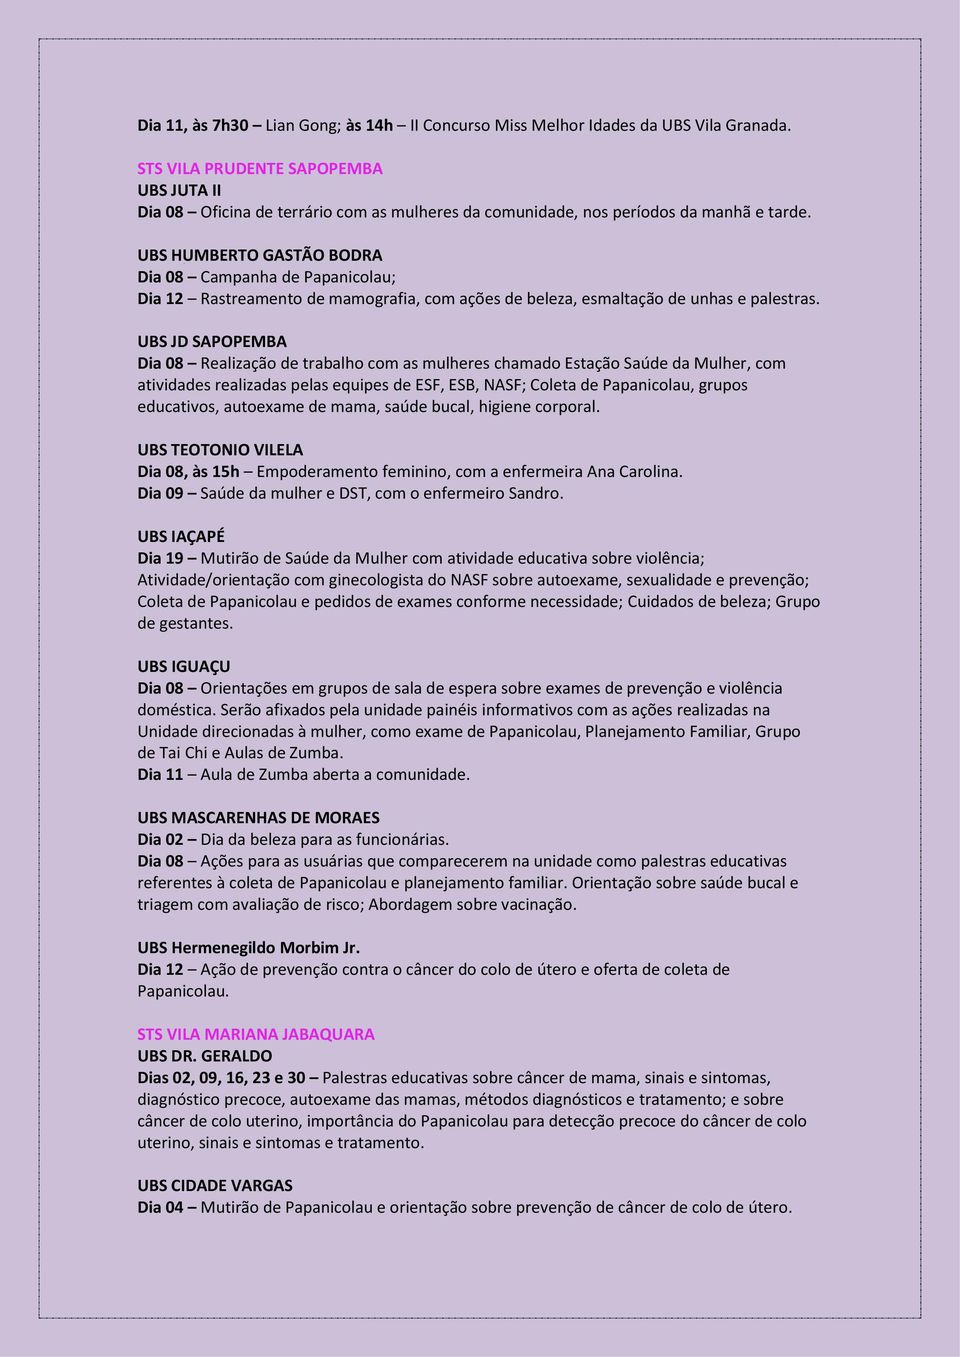 UBS HUMBERTO GASTÃO BODRA Dia 08 Campanha de Papanicolau; Dia 12 Rastreamento de mamografia, com ações de beleza, esmaltação de unhas e palestras.